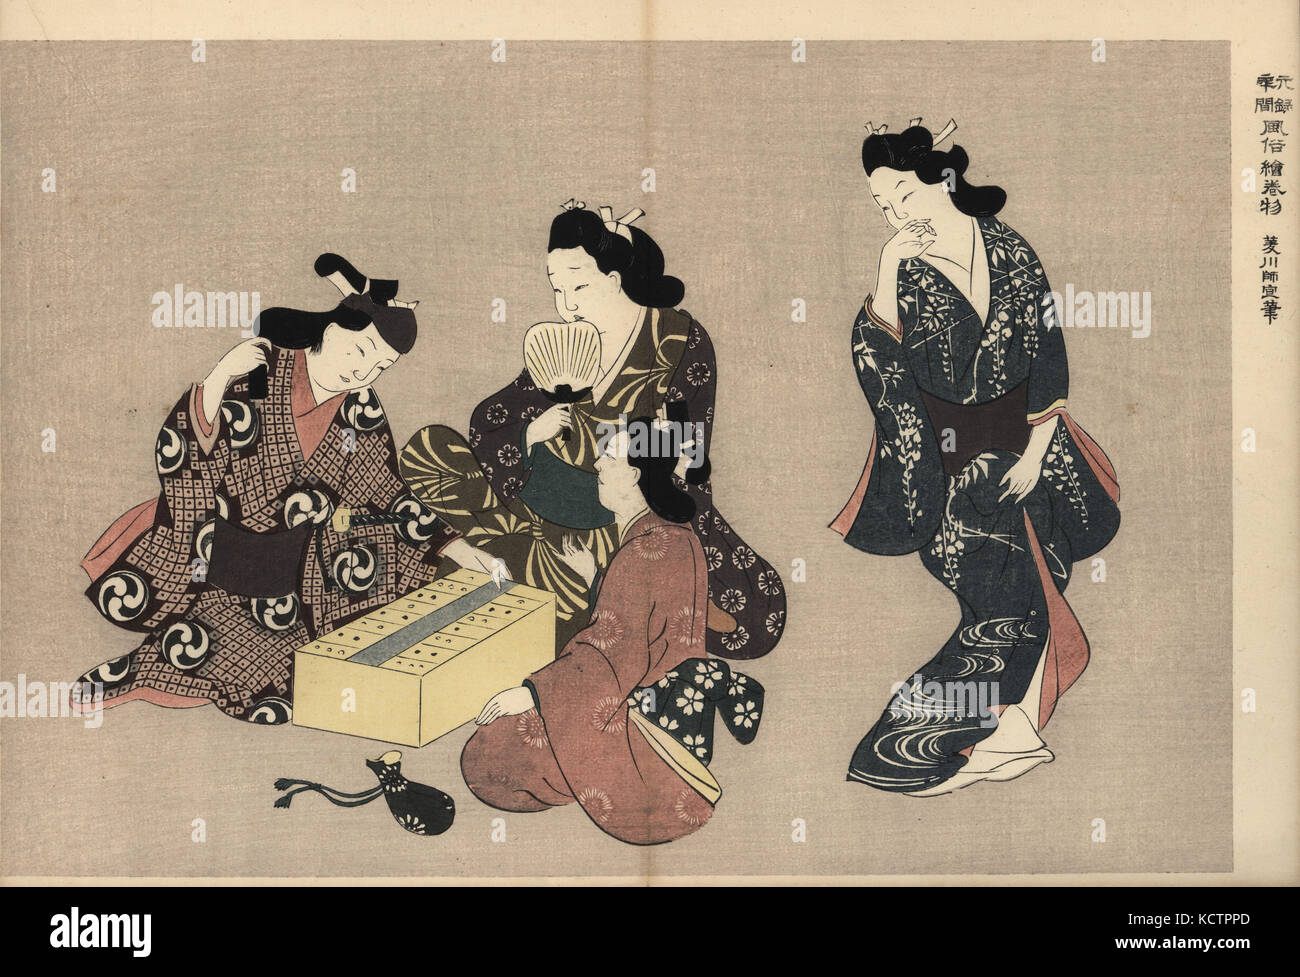 Les courtisanes et danser (backgammon) dictionnaire japonais avec un client dans le plaisir. Moronobu Hishikawa par gravure sur bois (1618-1694) de Fuzoku Emakimono, rouleau de la commerce de l'eau Tokyo, réimpression vers 1880. Banque D'Images